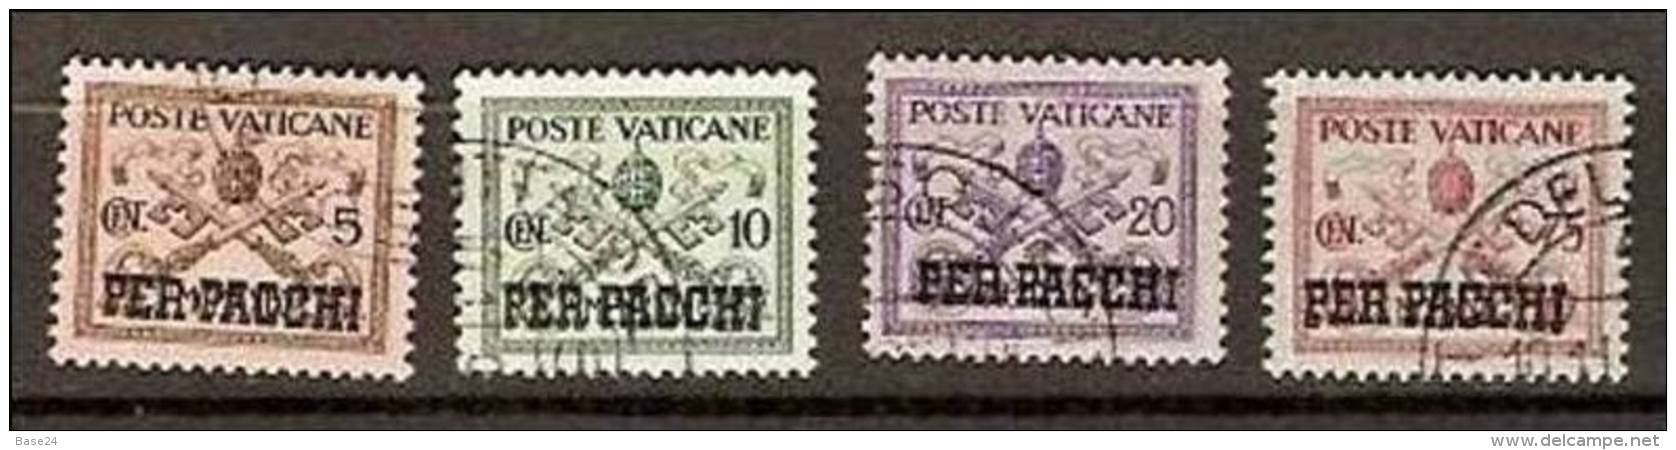 1931 Vaticano Vatican PACCHI POSTALI  5c+10c+20c+75c Usati USED Parcel Post - Pacchi Postali